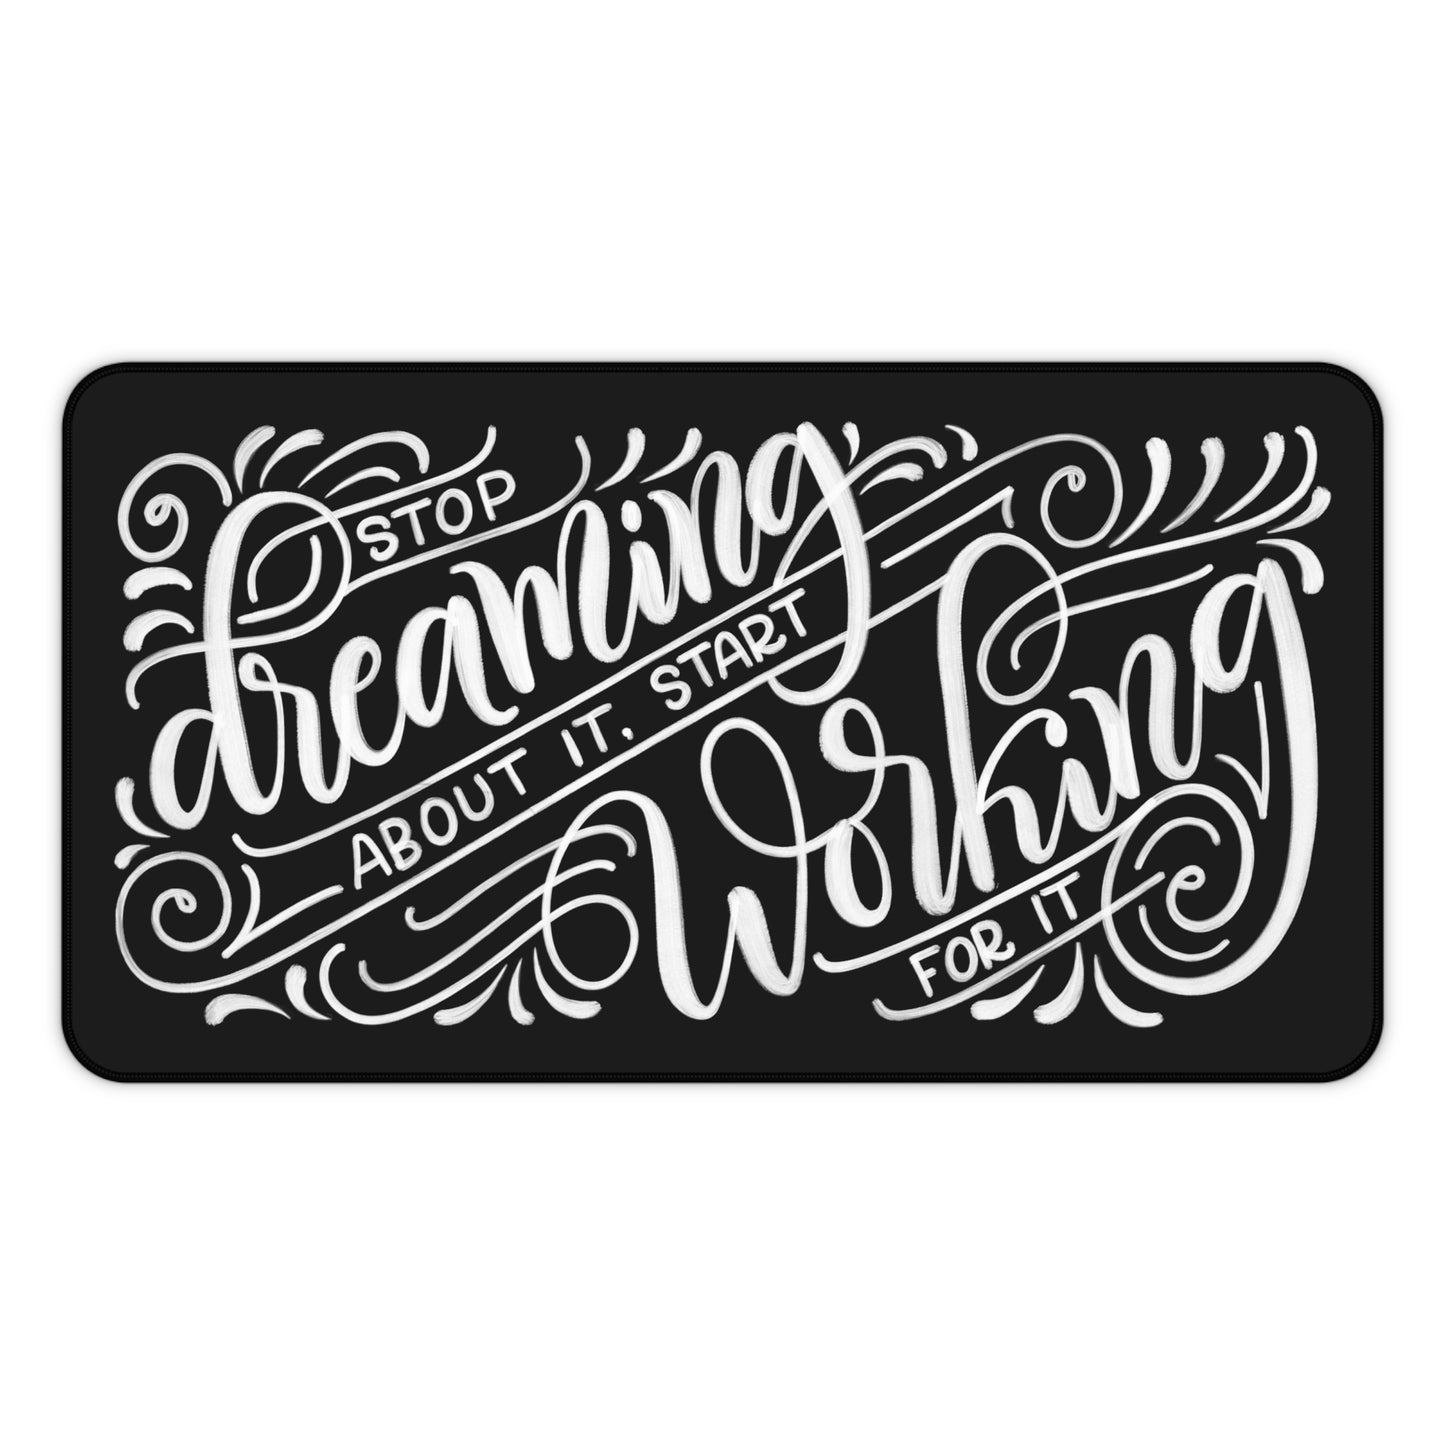 Stop dreaming about it, start working for it - Desk Mat - howjoyfulshop